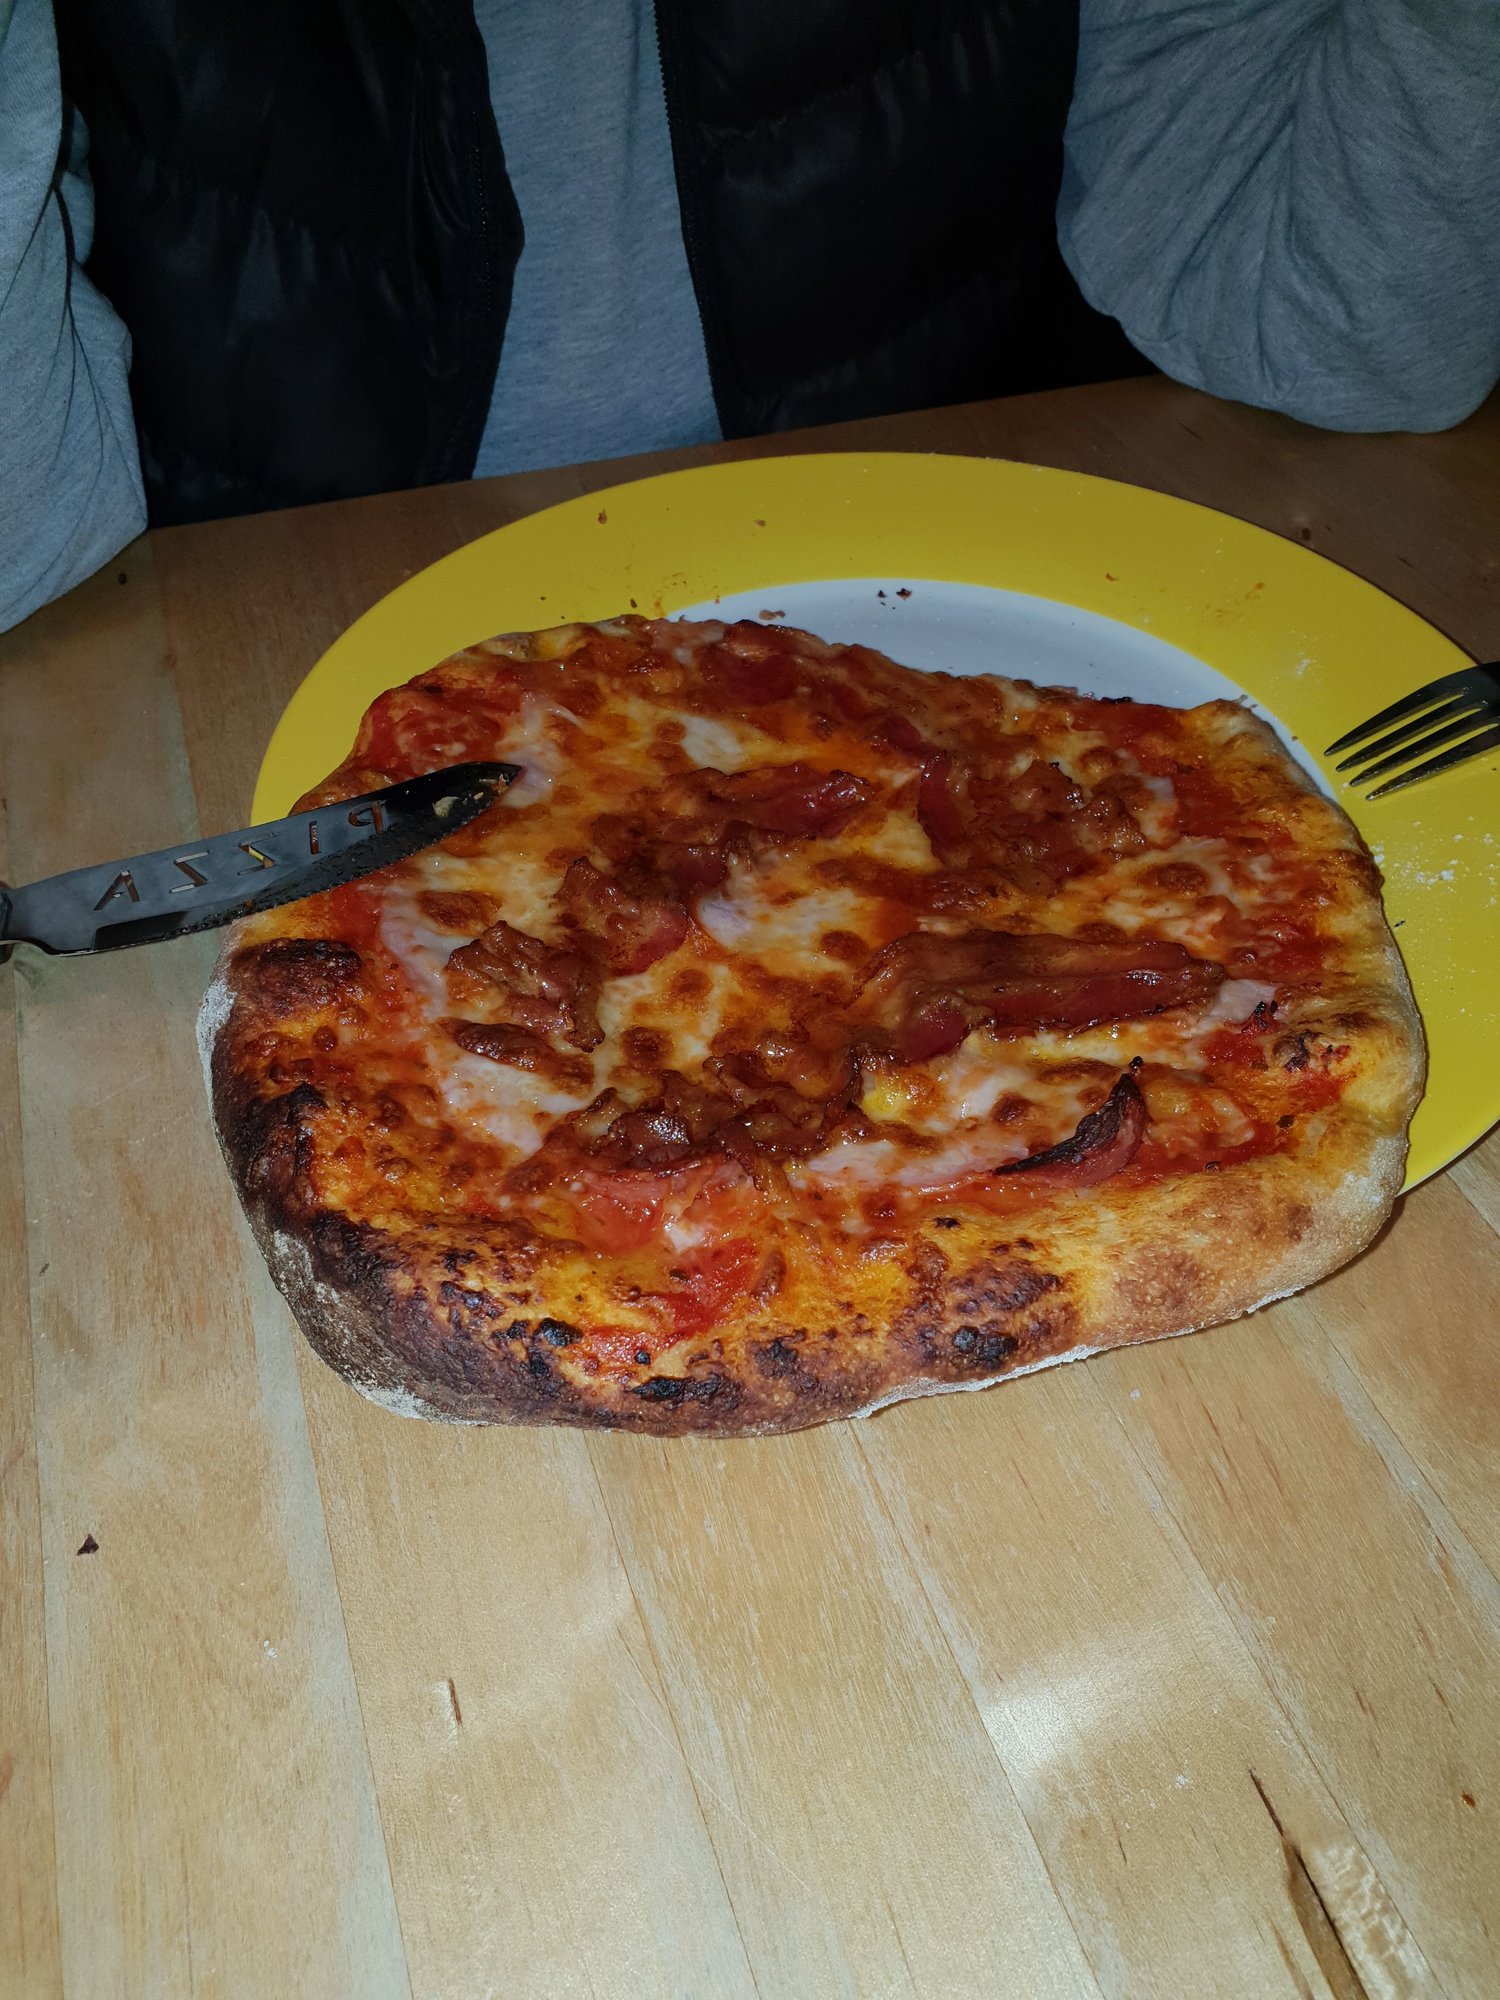 Mein Pizza-Traum - oder wie ich zur Pizza kam! | Grillforum und BBQ